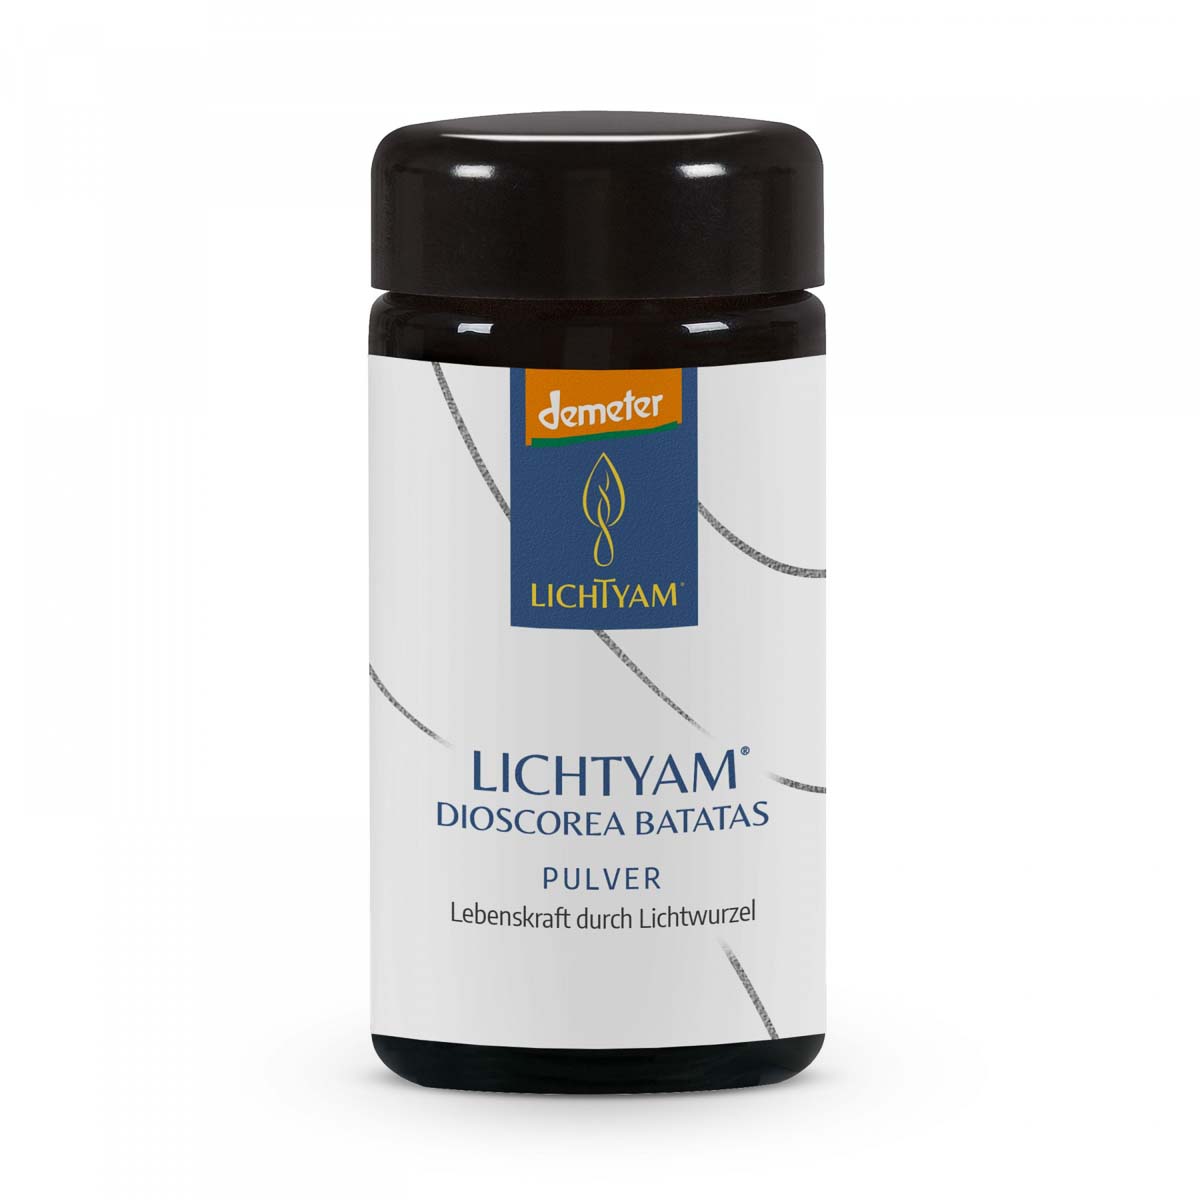 Lichtyam Pulver 60 g "Demeter" roh